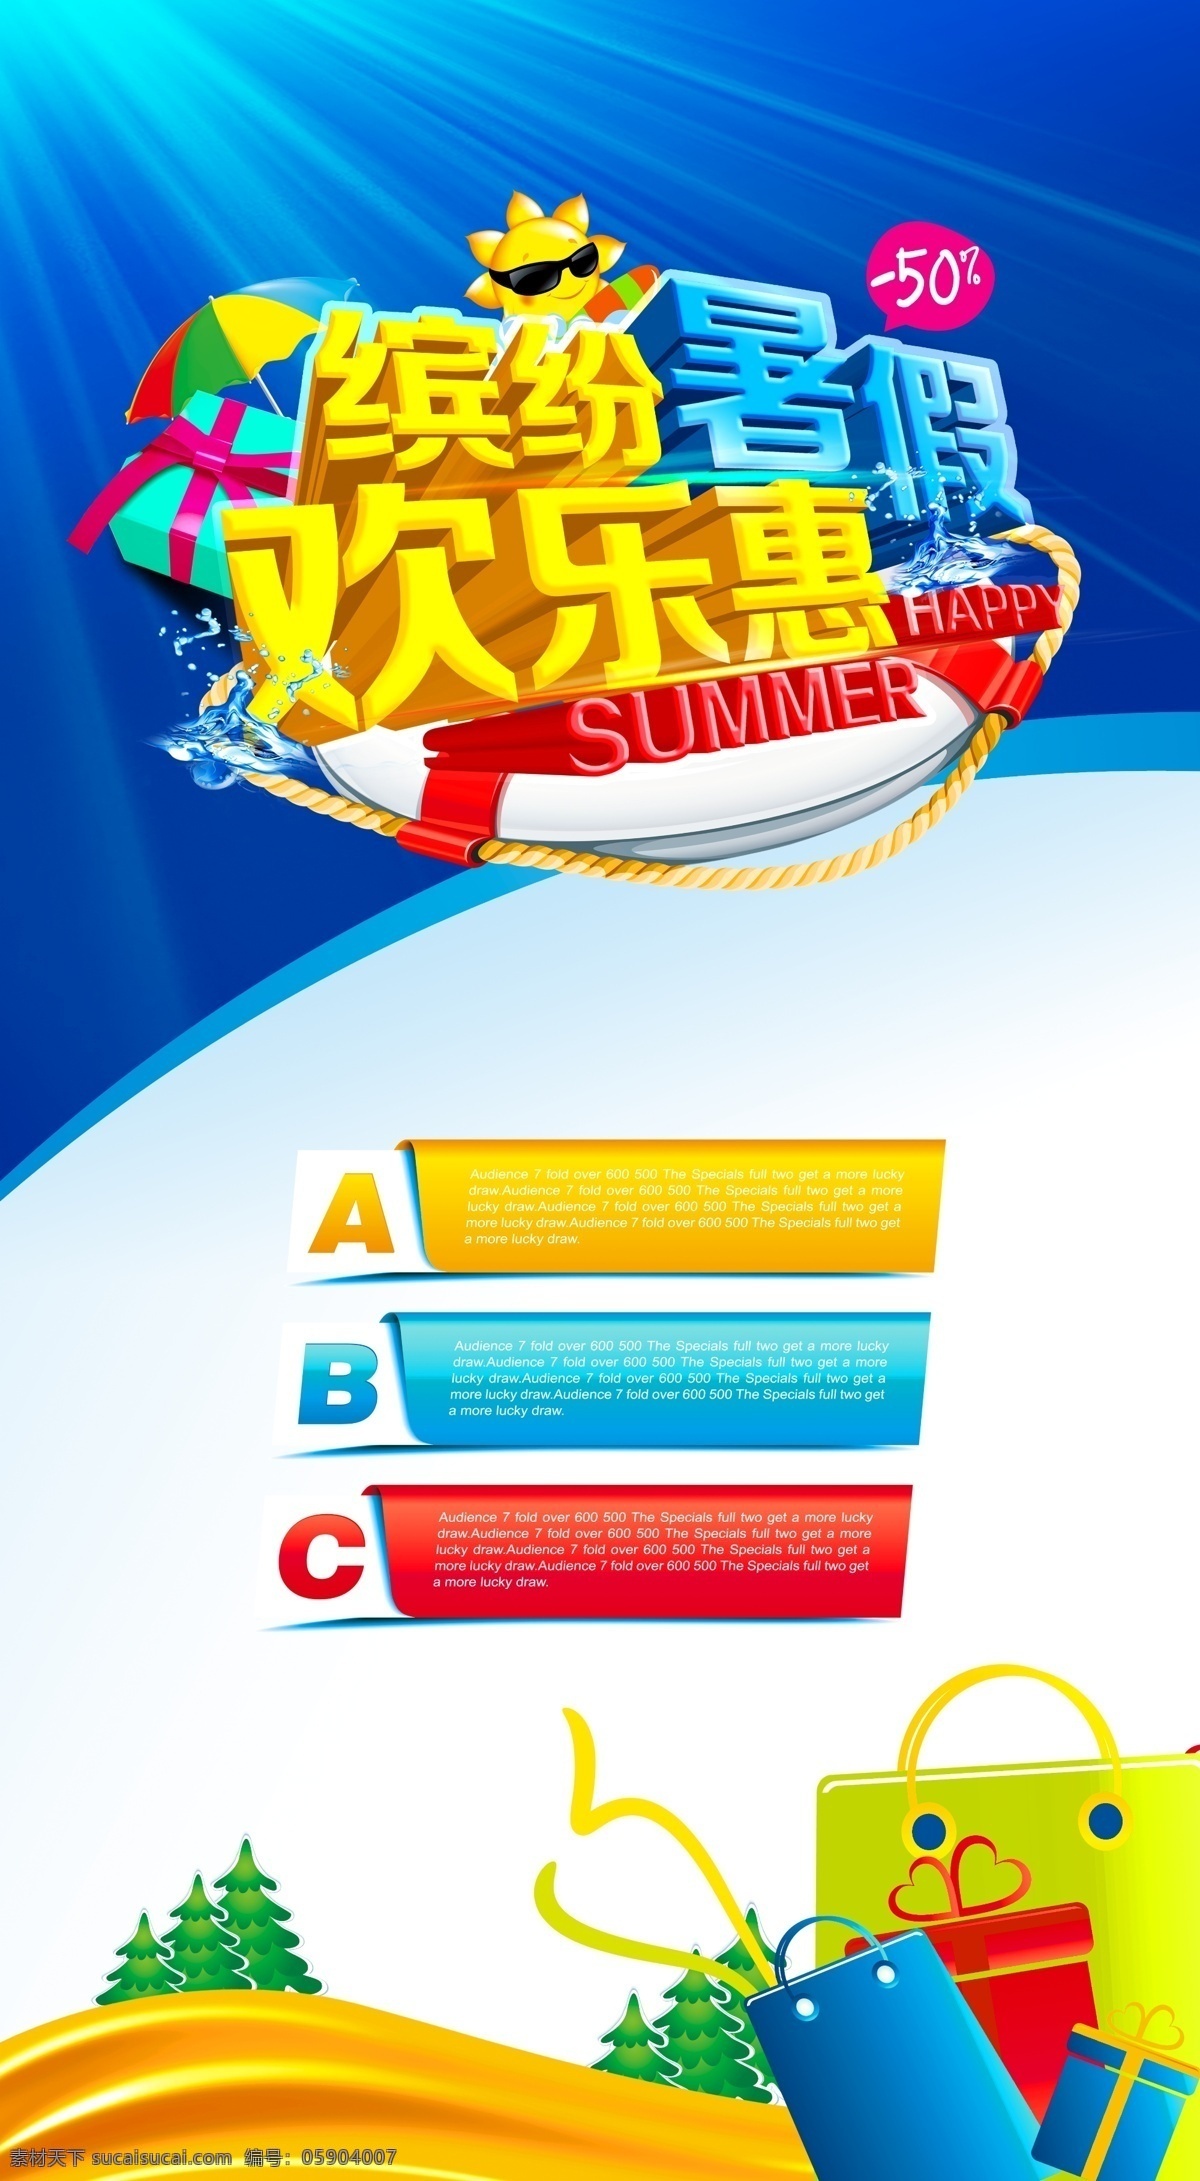 暑假 购物 海报下载 暑假购物海报 欢乐惠 卡通太阳 太阳伞 船 礼包 招贴设计 白色